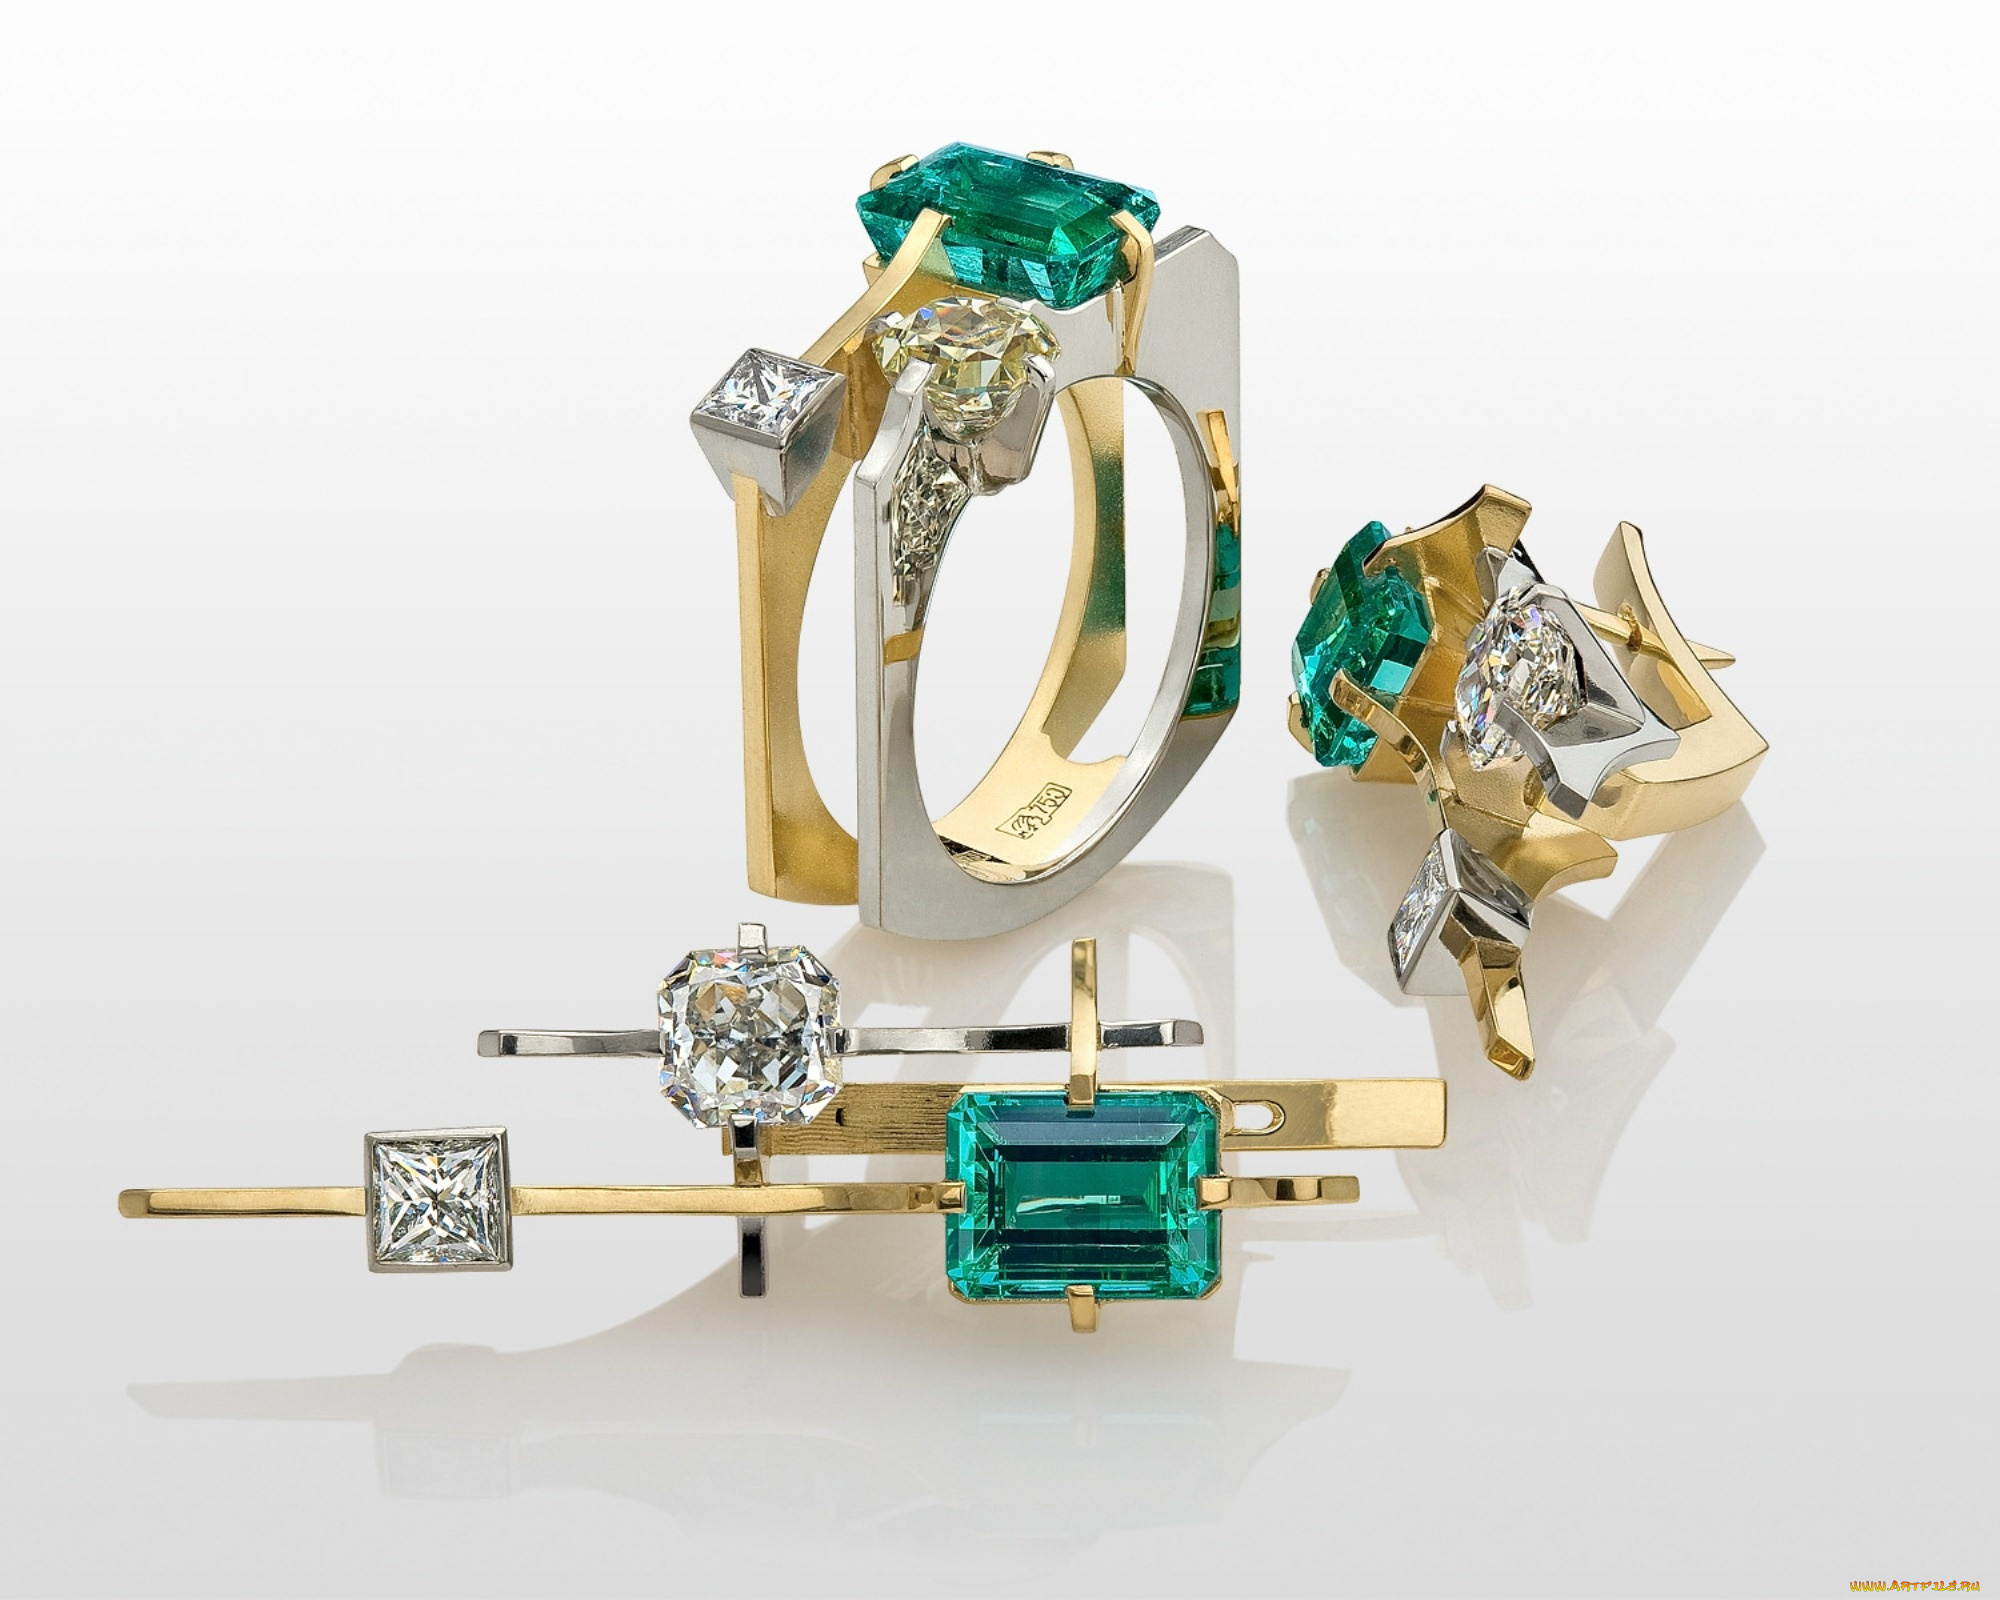 Где купить ювелирные изделия. Серьги 573-21901 BS Brilliant Style Jewelry ИП Опарин. Argos Jewel серьги изумруд. Эксклюзивные ювелирные украшения с драгоценными камнями. Эксклюзивные золотые серьги.